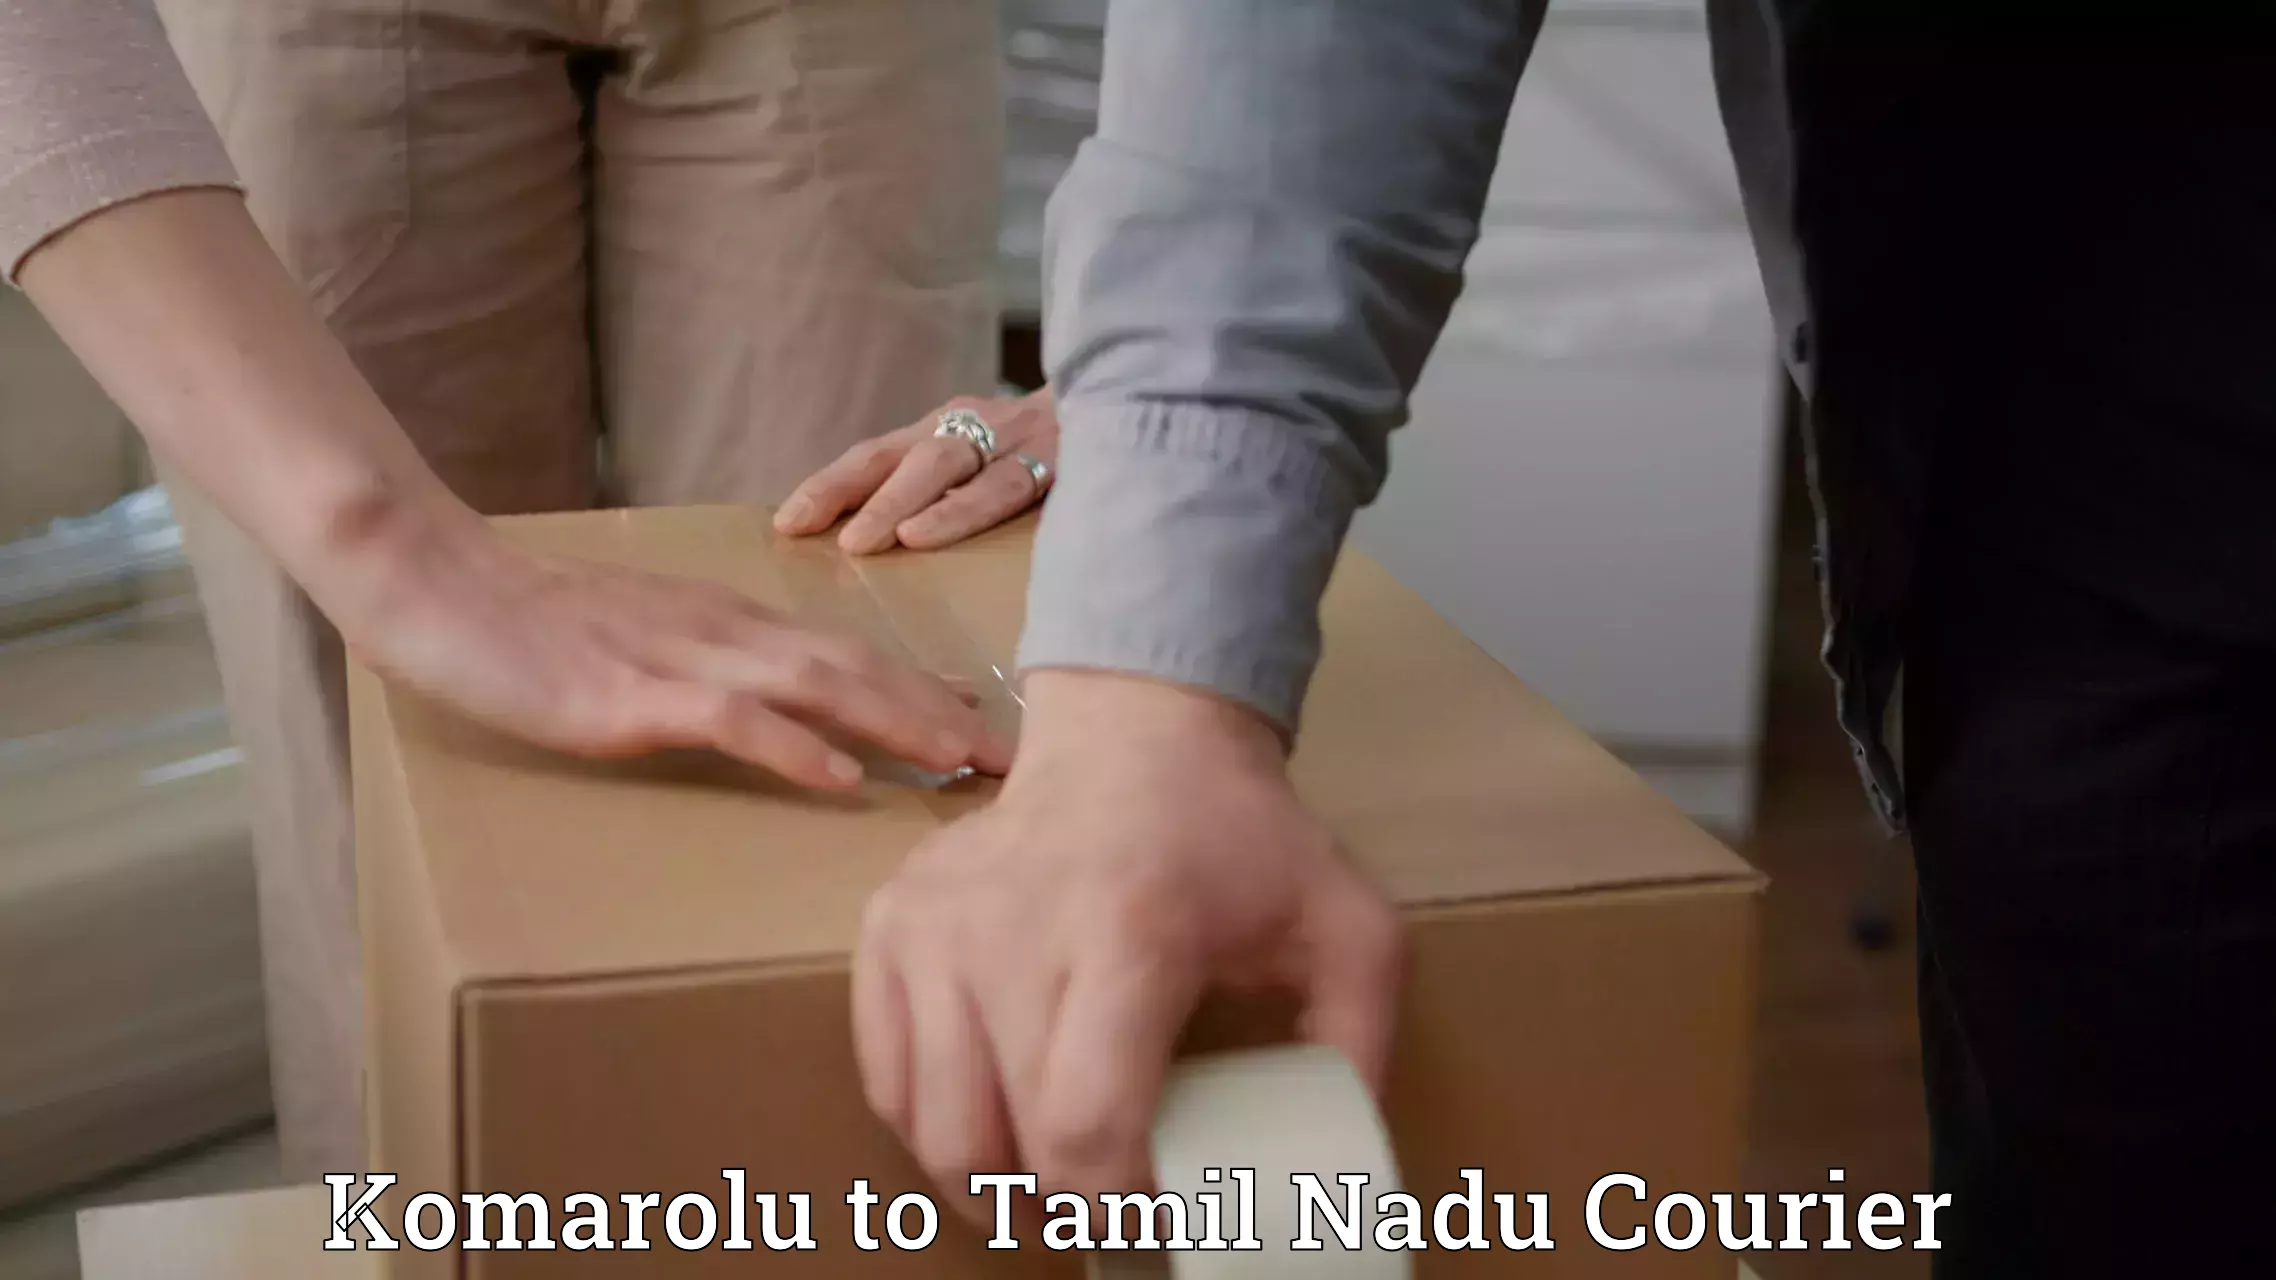 Efficient logistics management Komarolu to Tamil Nadu